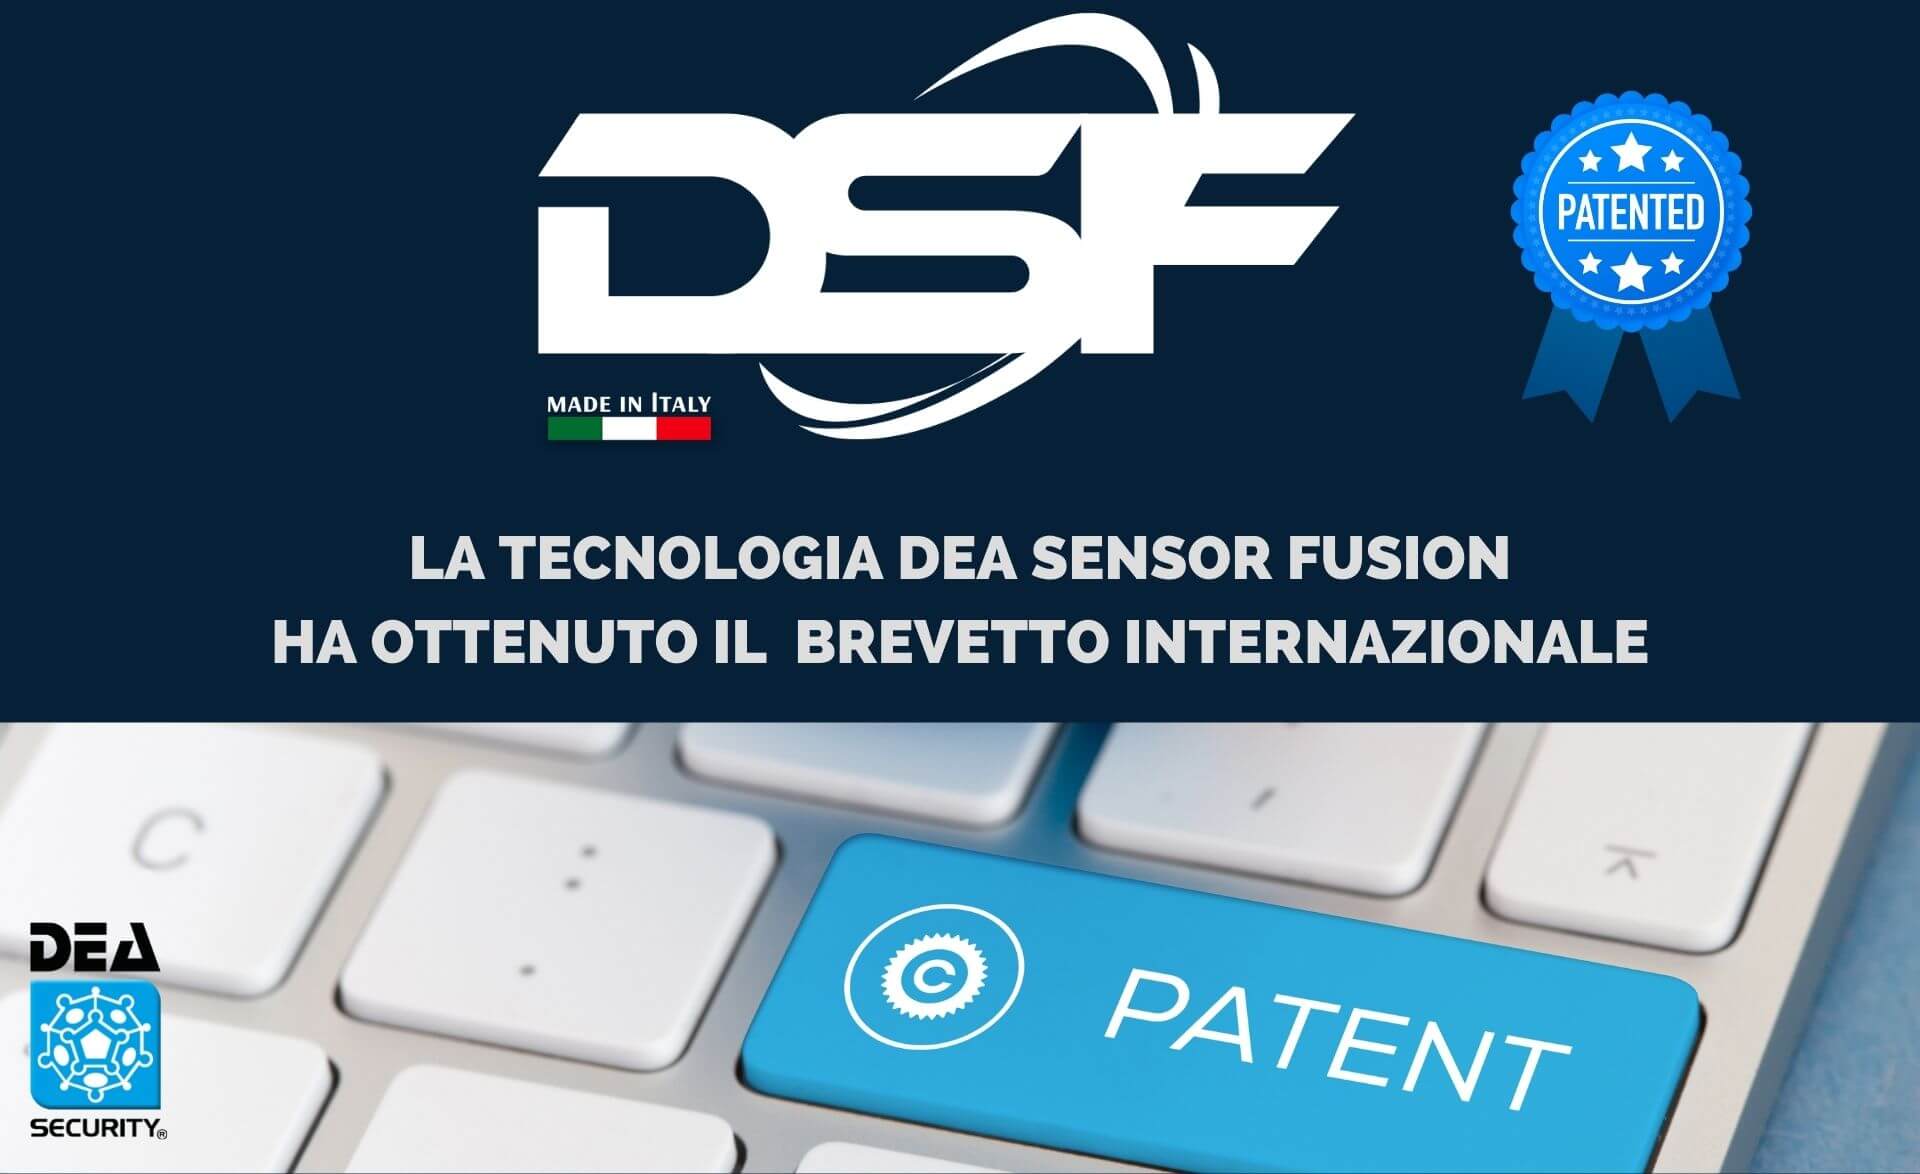 DEA Sensor Fusion brevetto internazionale